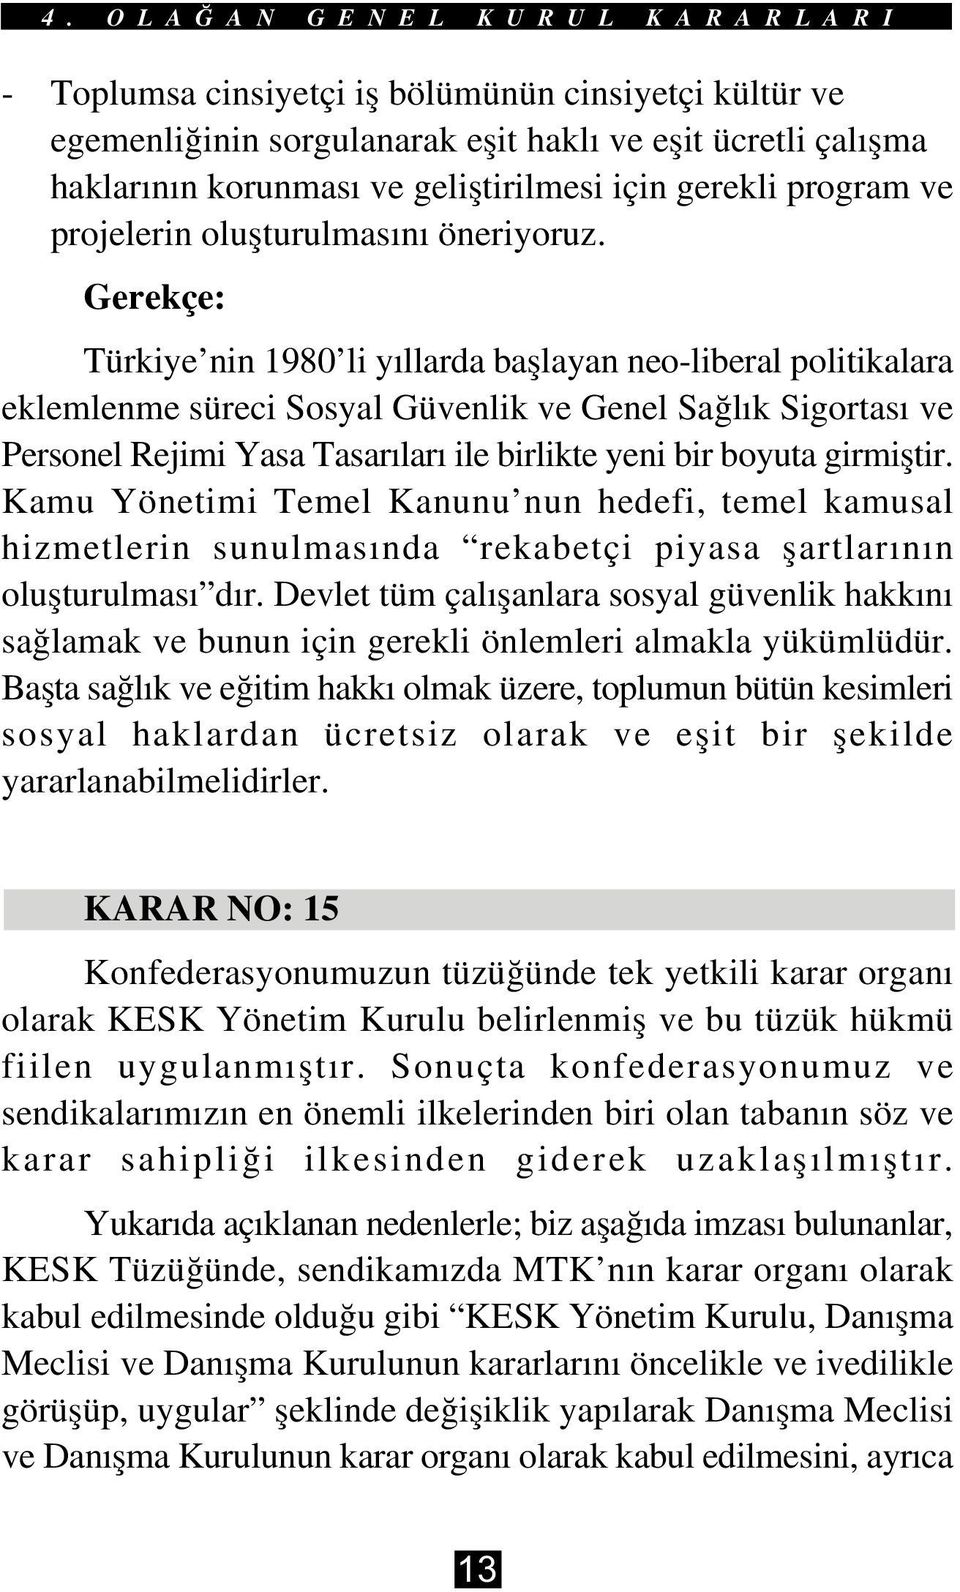 Gerekçe: Türkiye nin 1980 li yýllarda baþlayan neo-liberal politikalara eklemlenme süreci Sosyal Güvenlik ve Genel Saðlýk Sigortasý ve Personel Rejimi Yasa Tasarýlarý ile birlikte yeni bir boyuta